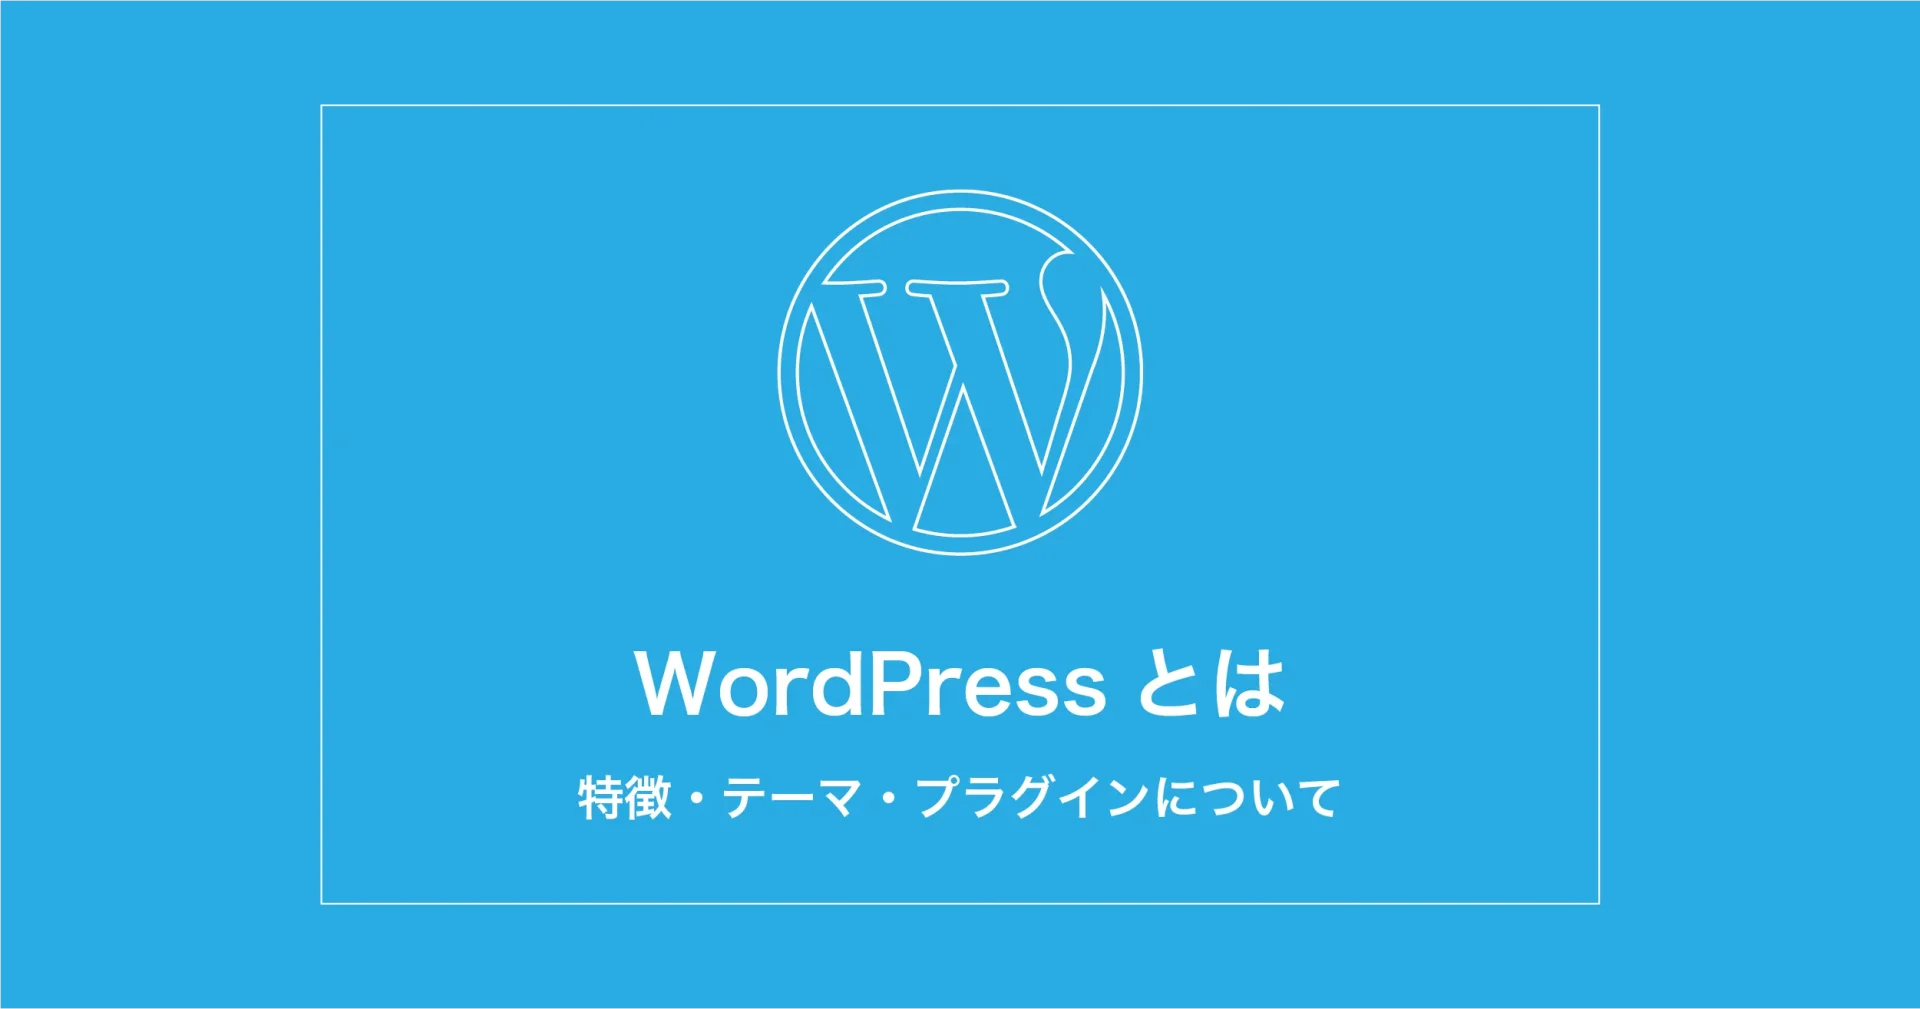 WordPressとは？特徴やテーマ、プラグインについて